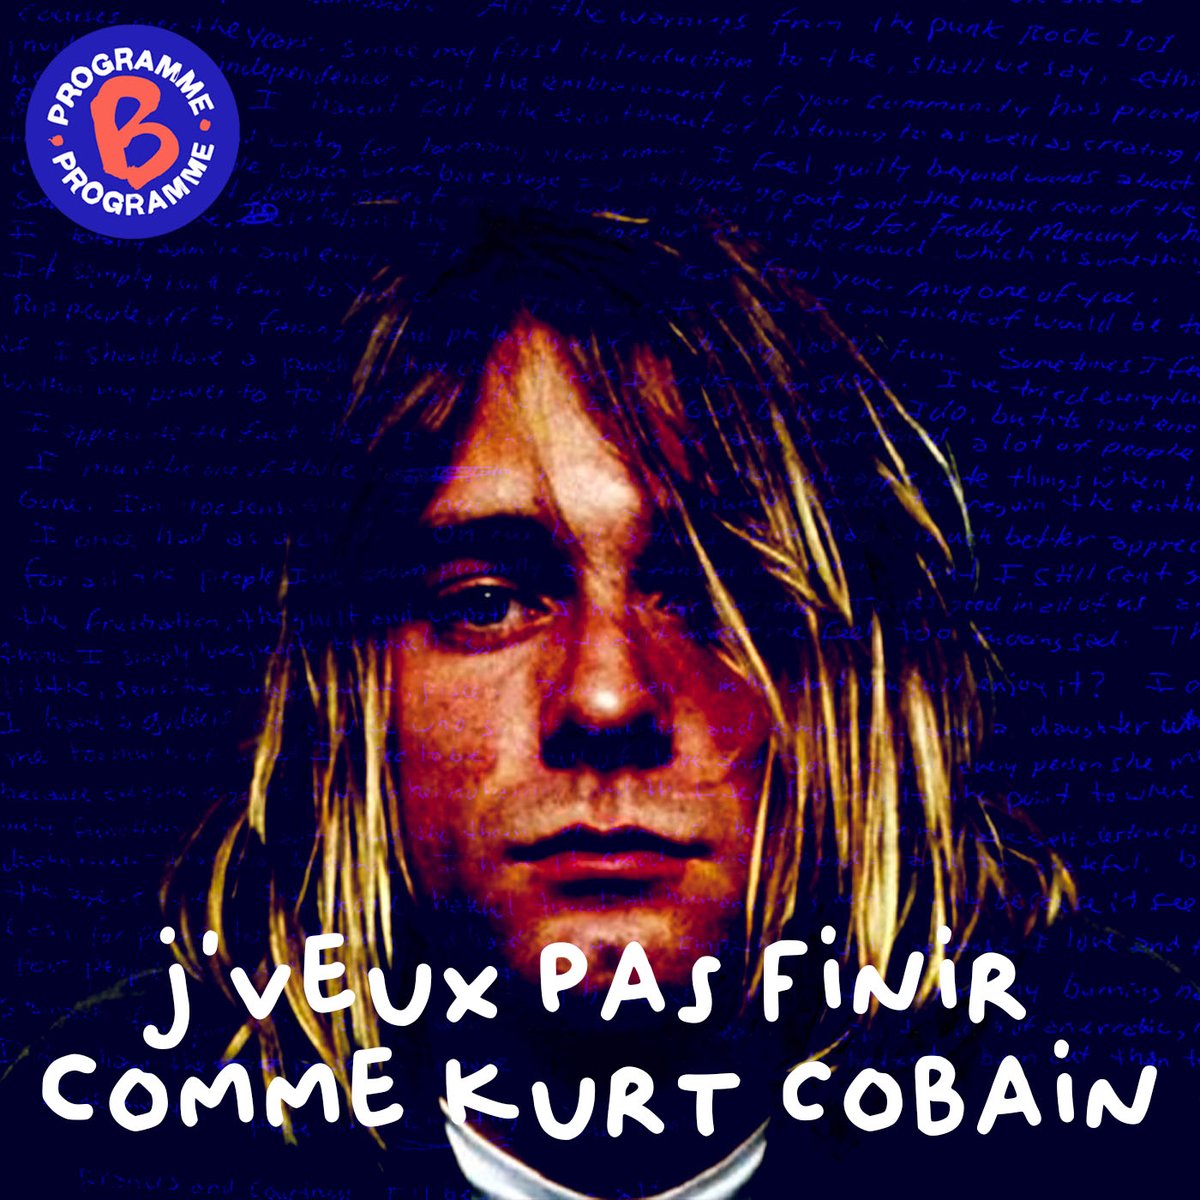 [ J'veux pas finir comme Kurt Cobain ] Avril 1994. Kurt Cobain, star du grunge et leader du groupe Nirvana, est retrouvé mort chez lui après s’être tiré une balle dans la tête. Partout dans le monde, des milliers de jeunes pleurent leur idole.